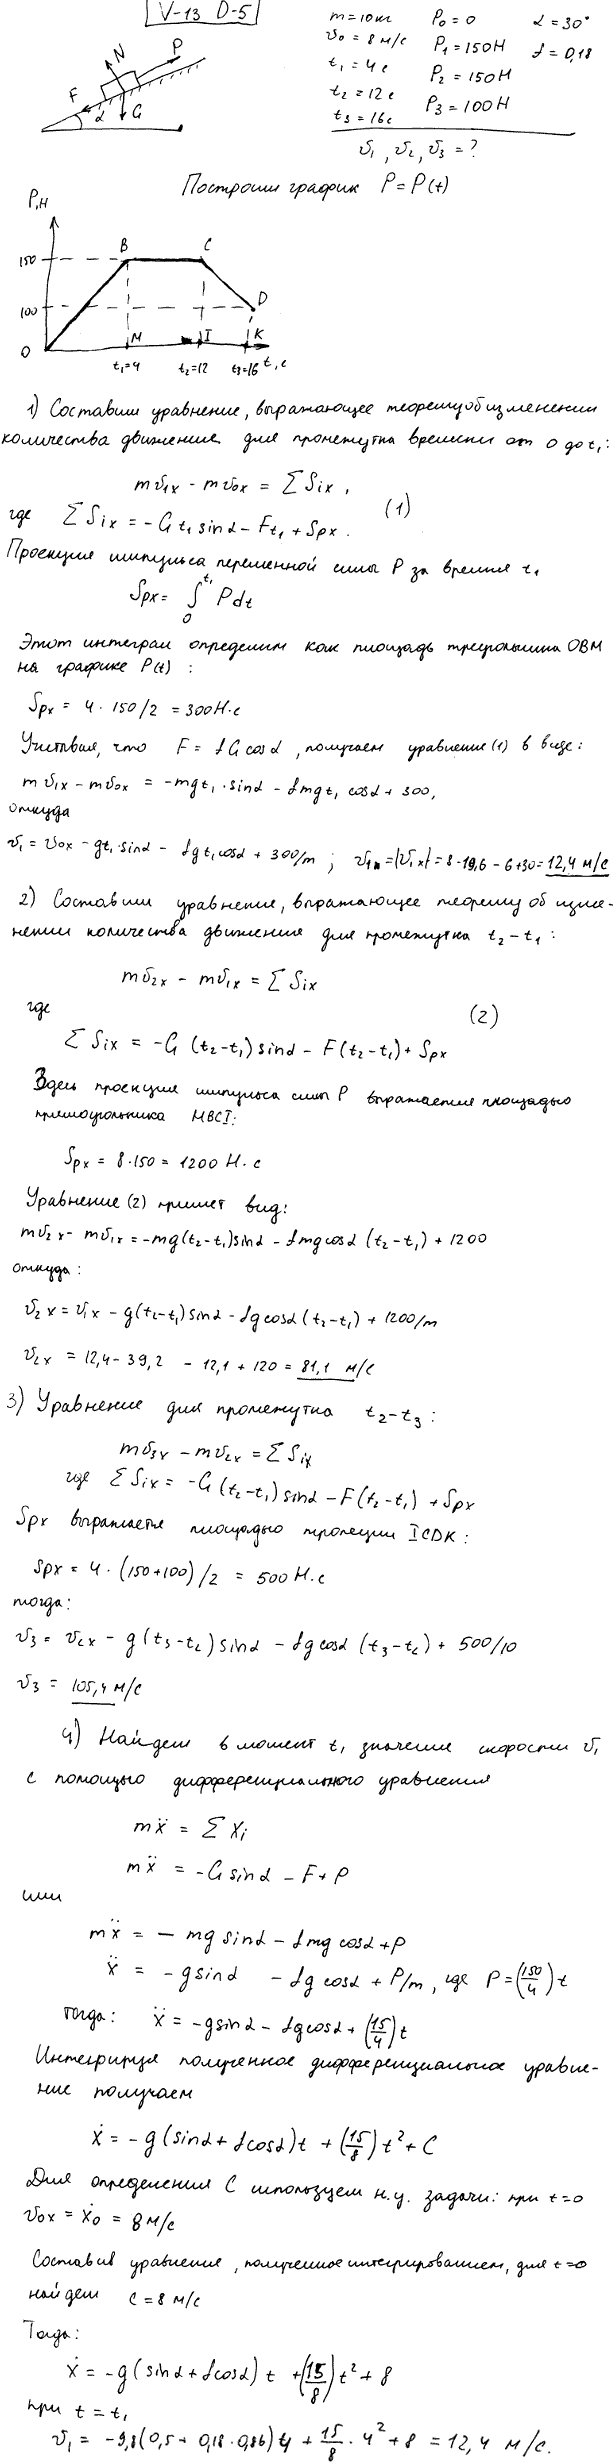 Задание Д.5 вариант 13. m=10 кг; v0=8,0 м/с; t1=4 с; t2=12 с; t3=16 с; P0=0 Н; P1=150 Н; P2=150 Н; P3=100 Н; α=30 град; f=0,18